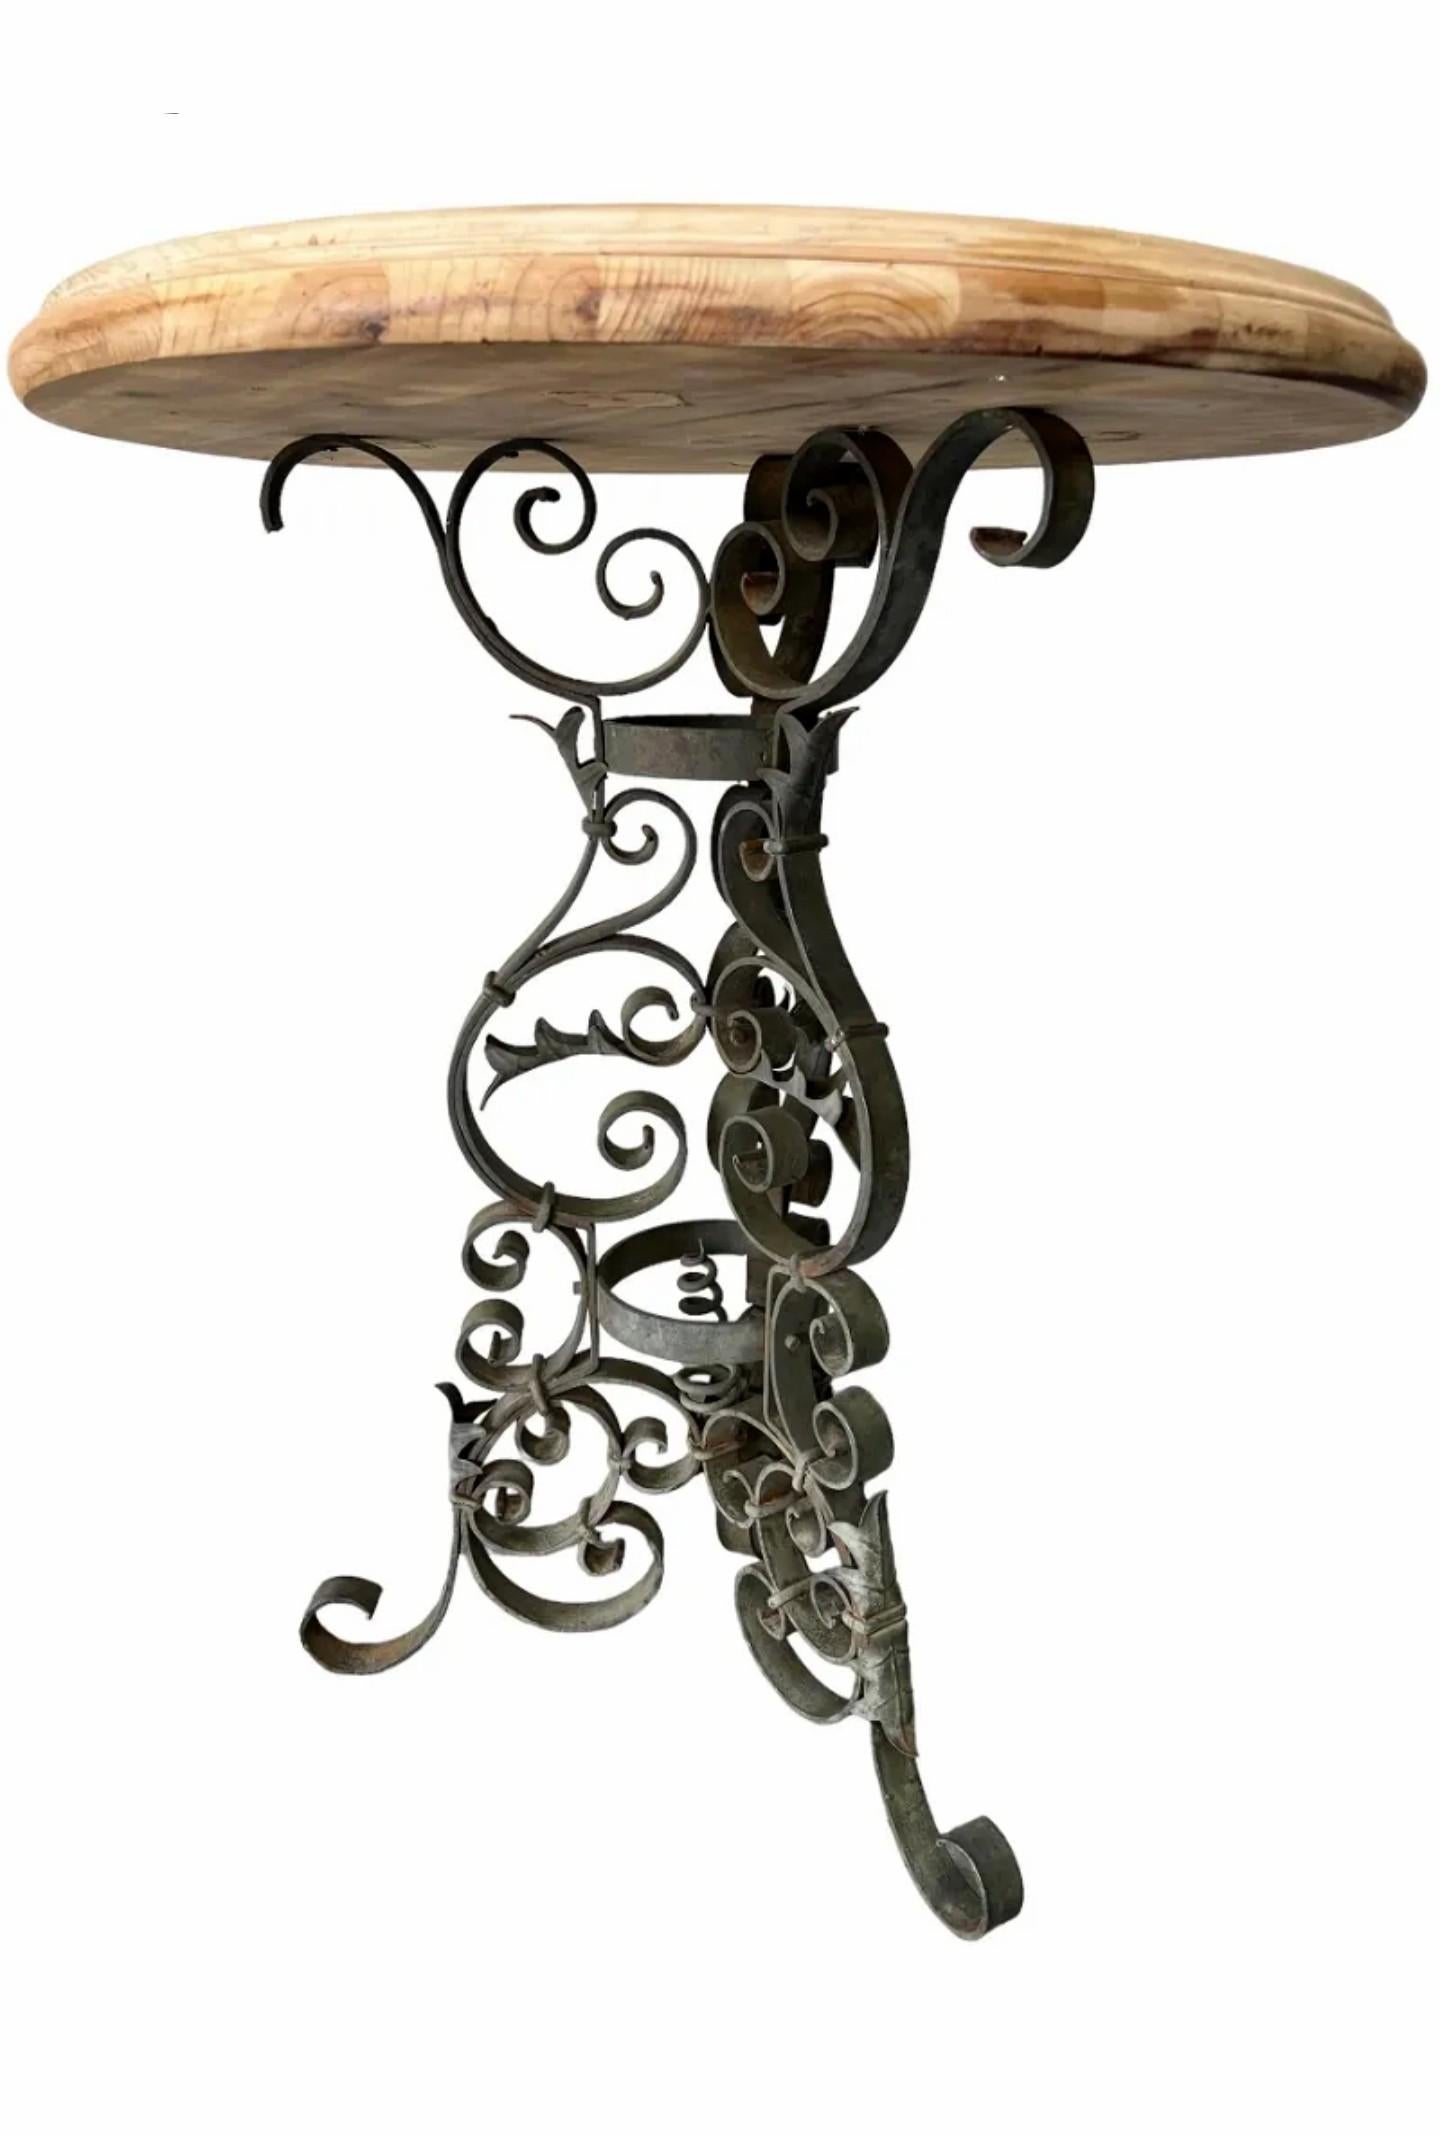 Table de bistrot antique de l'époque victorienne, 19e siècle, avec un plateau rond en bois blanchi à bord mouluré, reposant sur un socle tripartite en fer forgé noir orné de volutes. 

Dimensions : (environ)
36,5